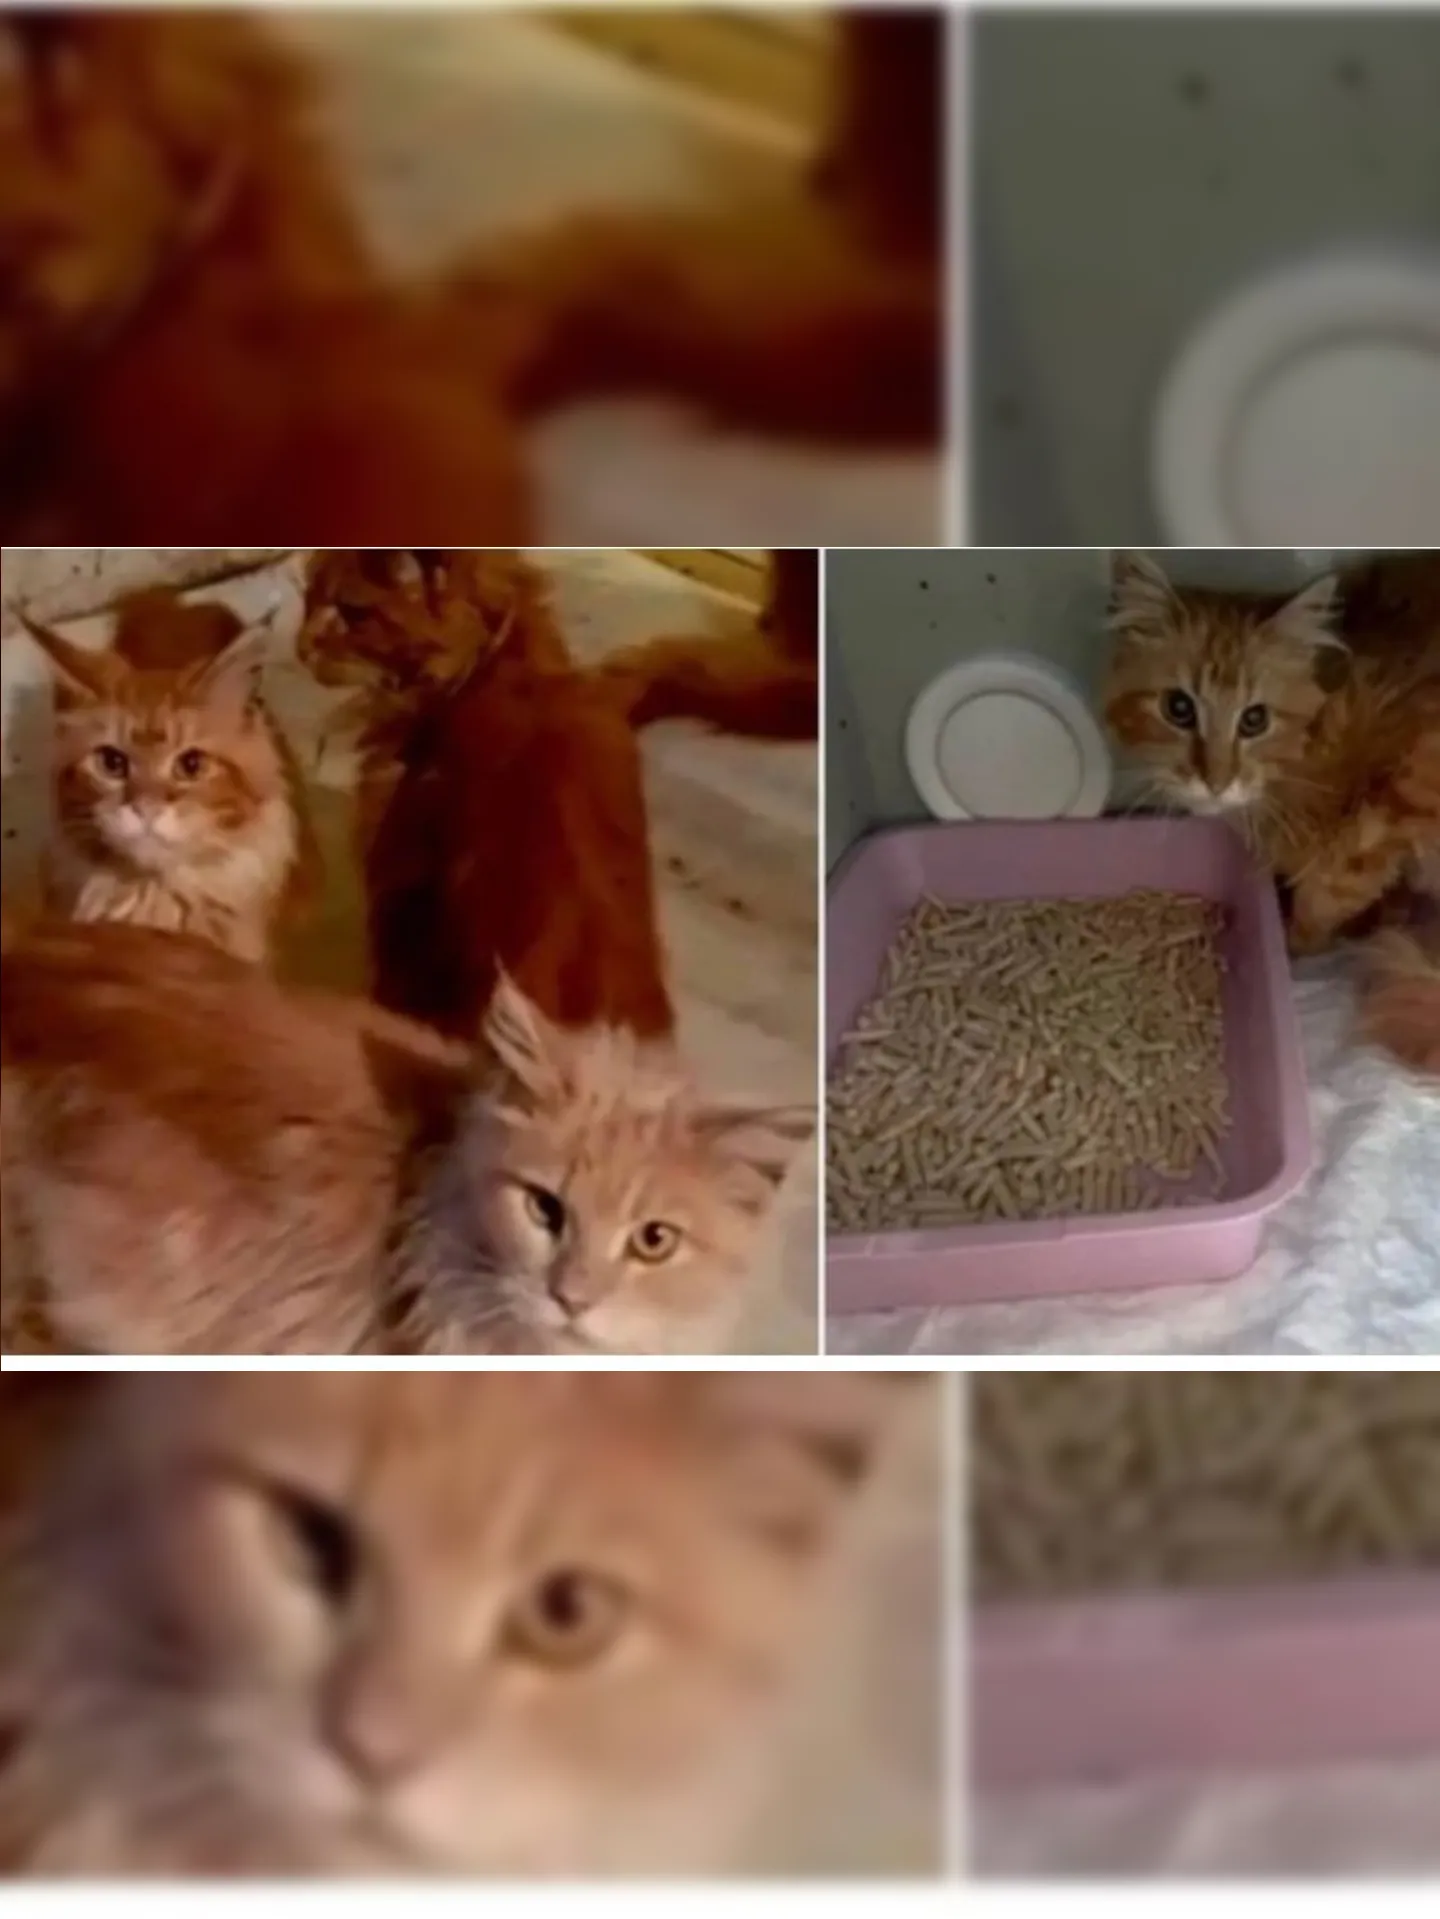 Gatos resgatados na Rússia após comerem parte do cadáver de mulher